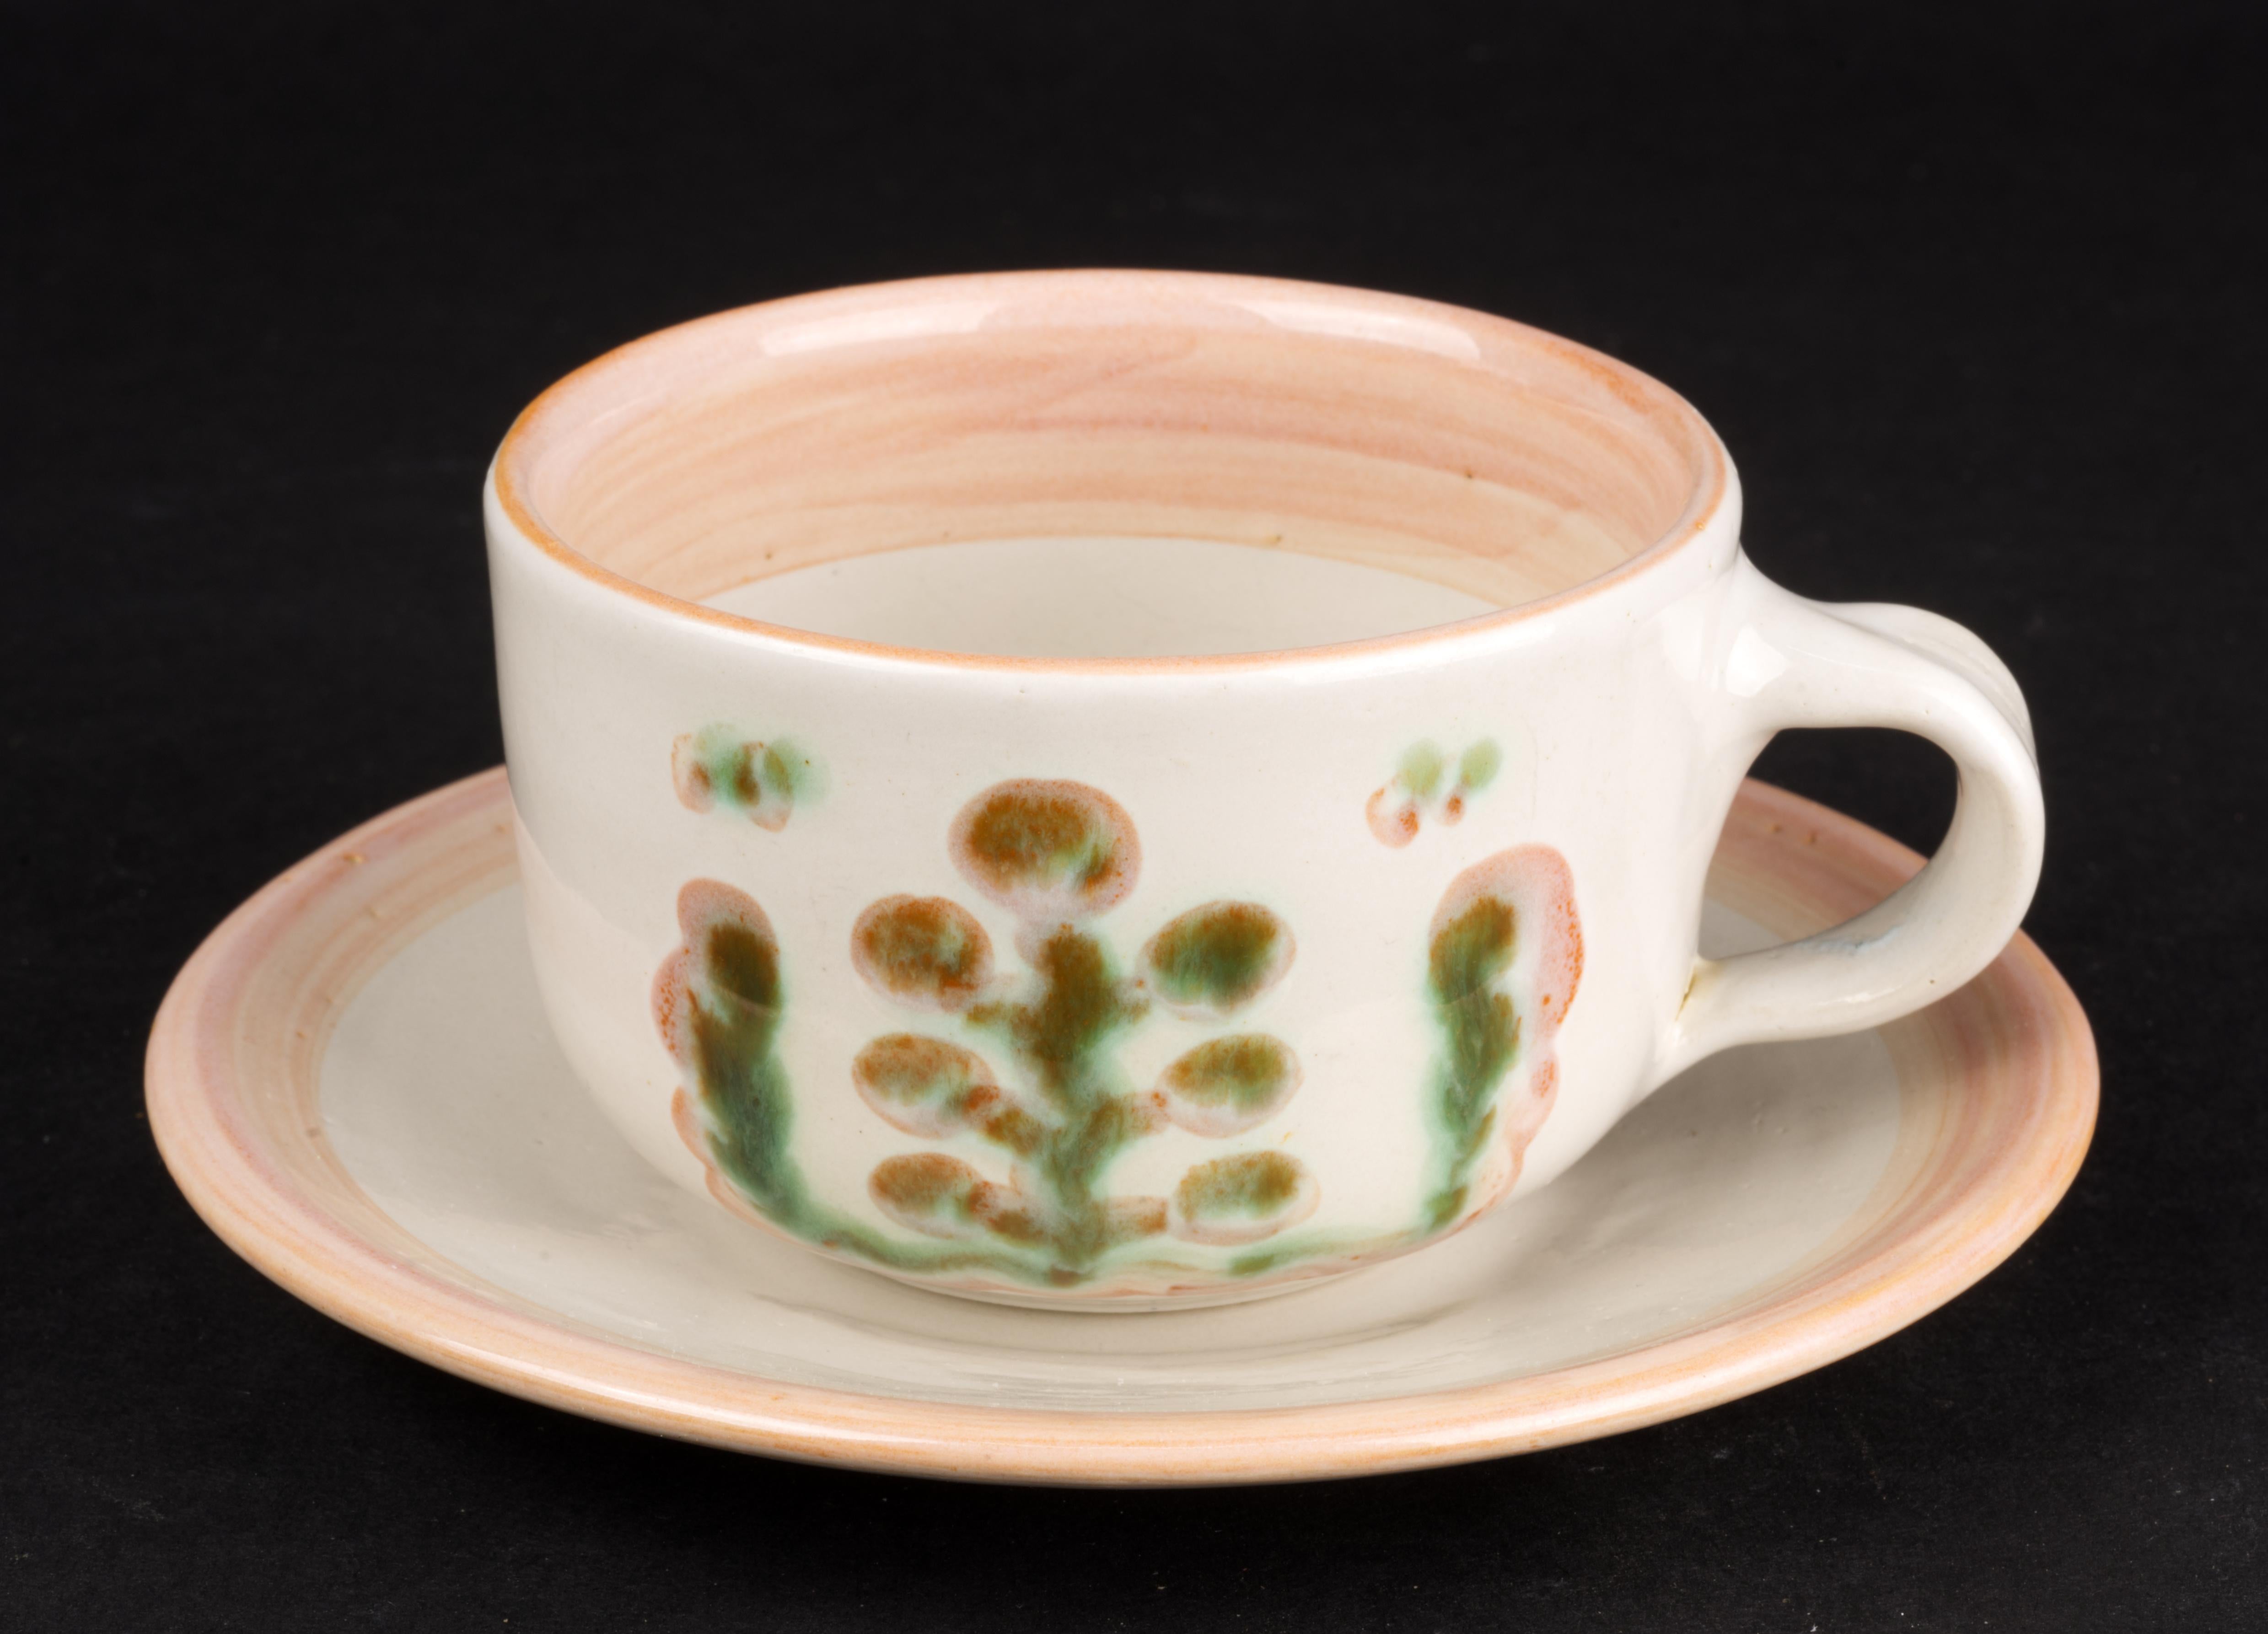  La tasse à thé ou à cappuccino et la soucoupe ont été fabriquées à la main par Hadley Pottery à Louisville, Kentucky. Il est peint à la main dans une palette minimale de vert et de rose avec des motifs stylisés de plantes et de fruits réalisés en